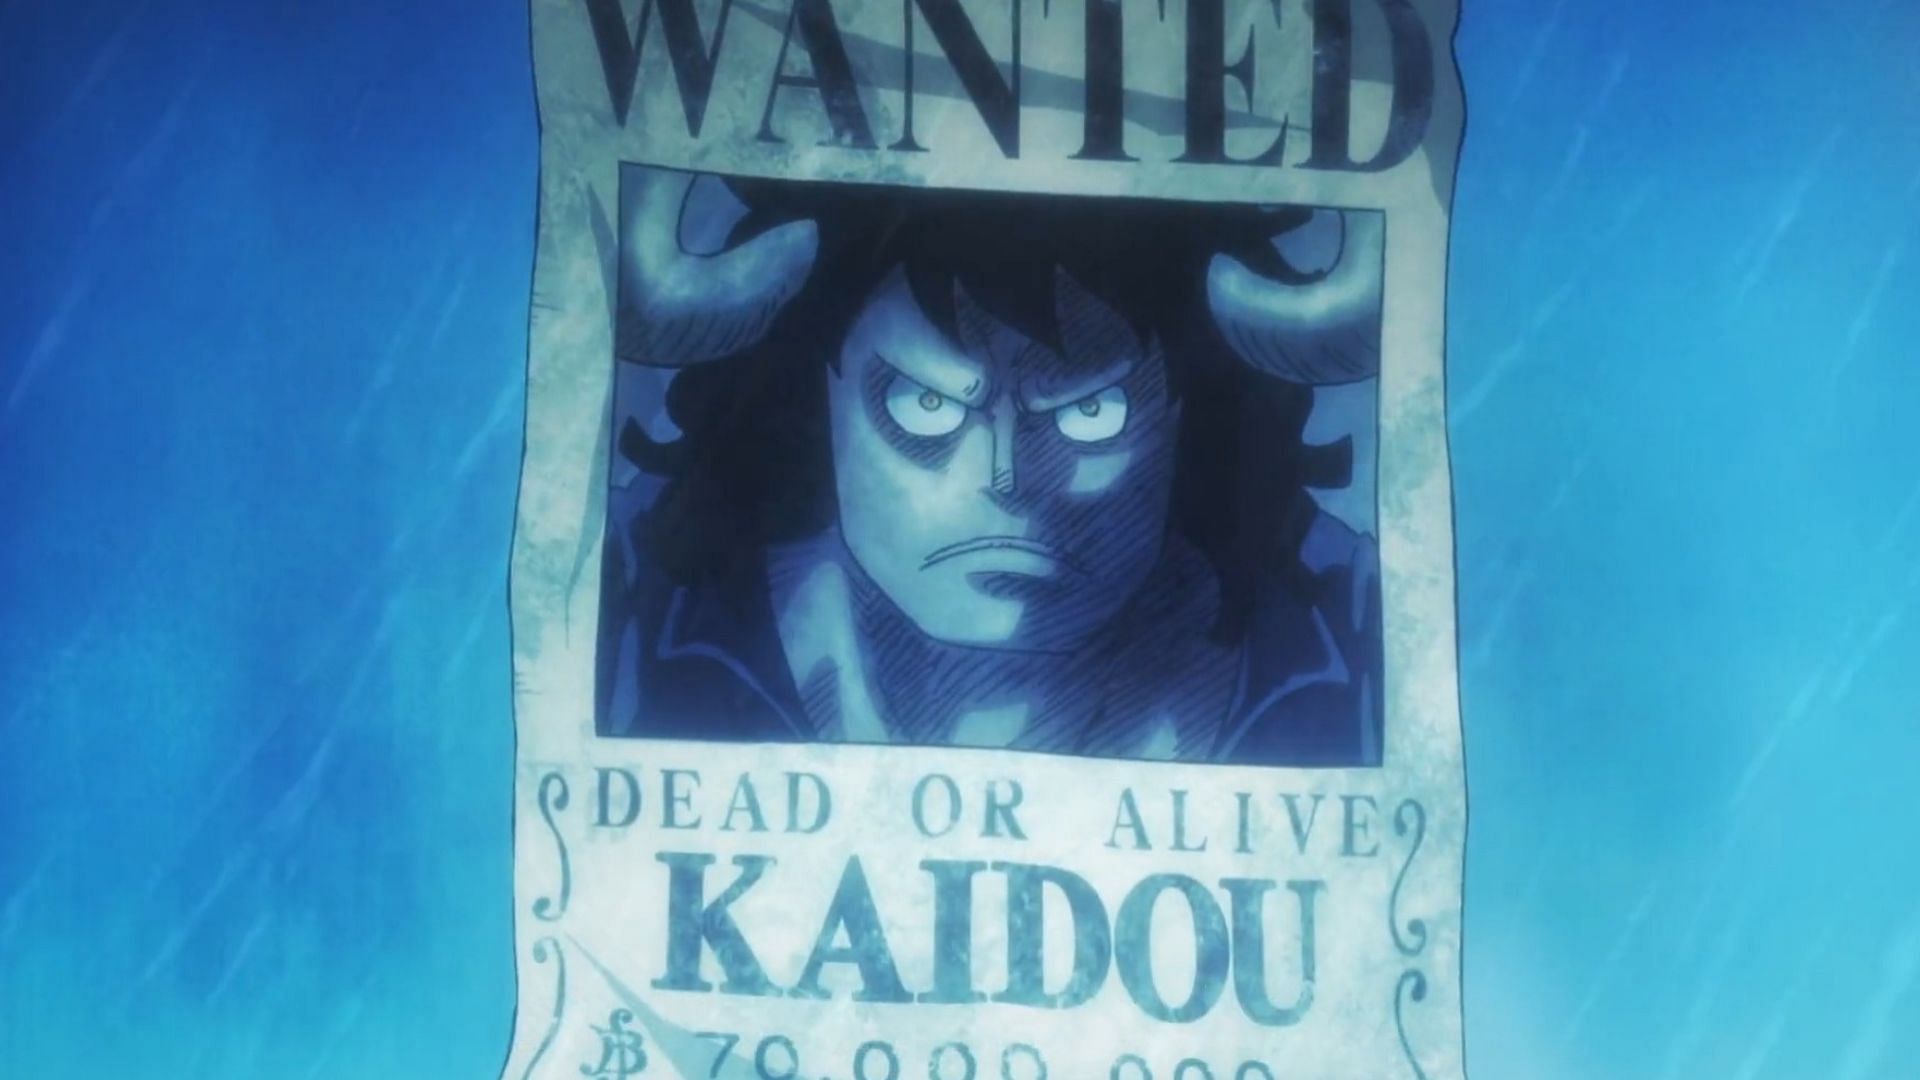 Prévia do Episódio 1076 de One Piece! Luffy vs Kaido vai finalmente ch